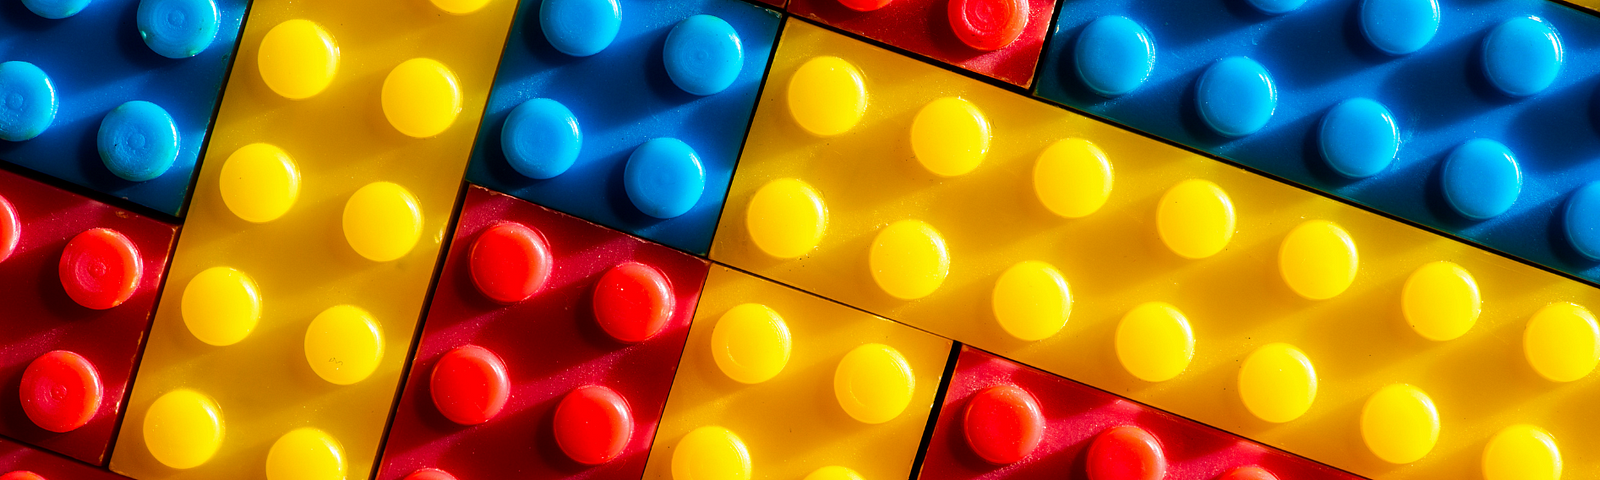 Blocos de lego azuis, amarelos e vermelhos organizados um ao lado do outro em diagonal.